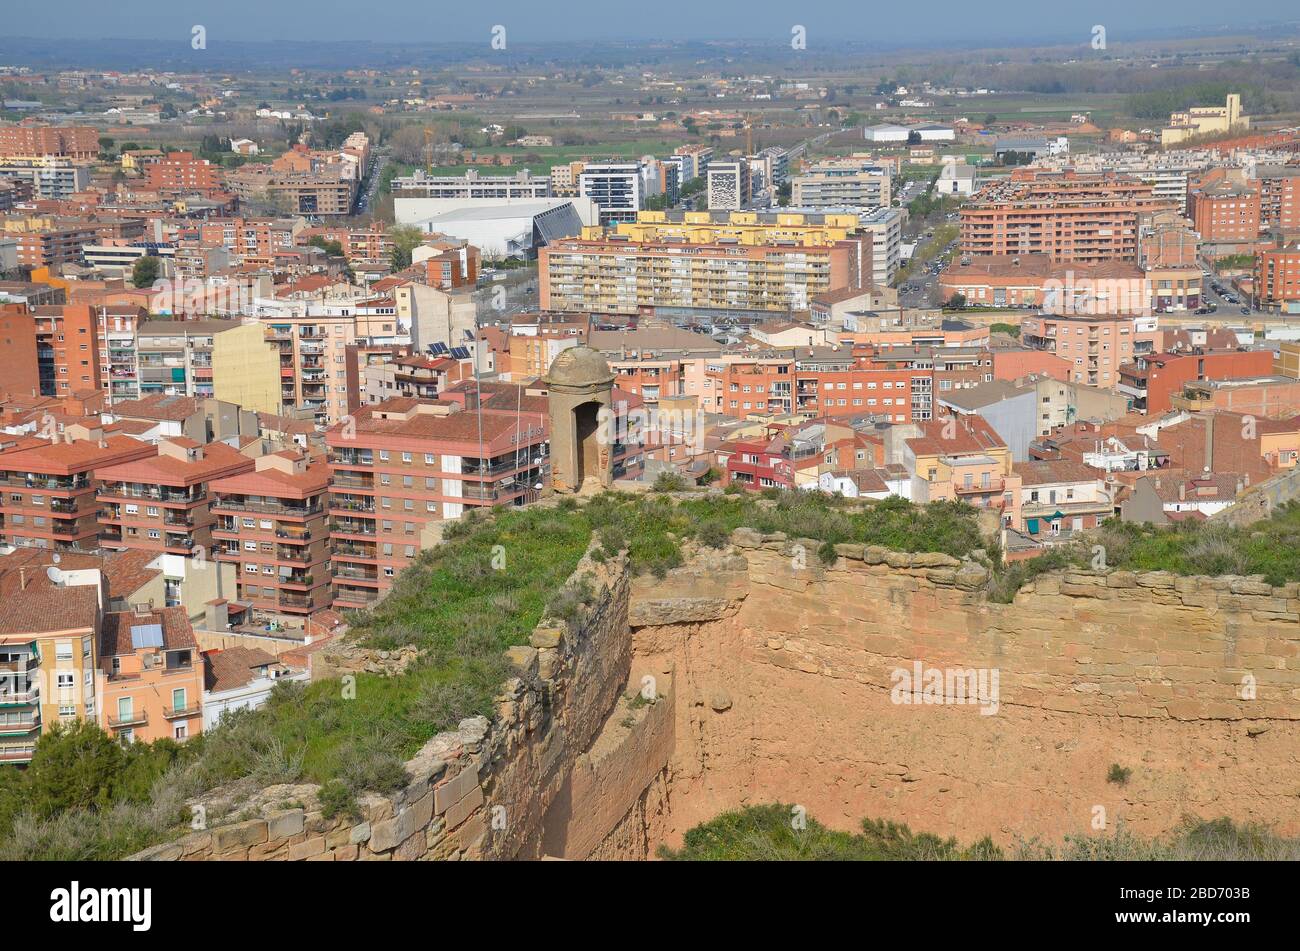 Die Stadt Lleida (Lerida) in Katalonien, Spanien: Blick von der Burg Seu Vella auf die Stadt, Panorama Stock Photo